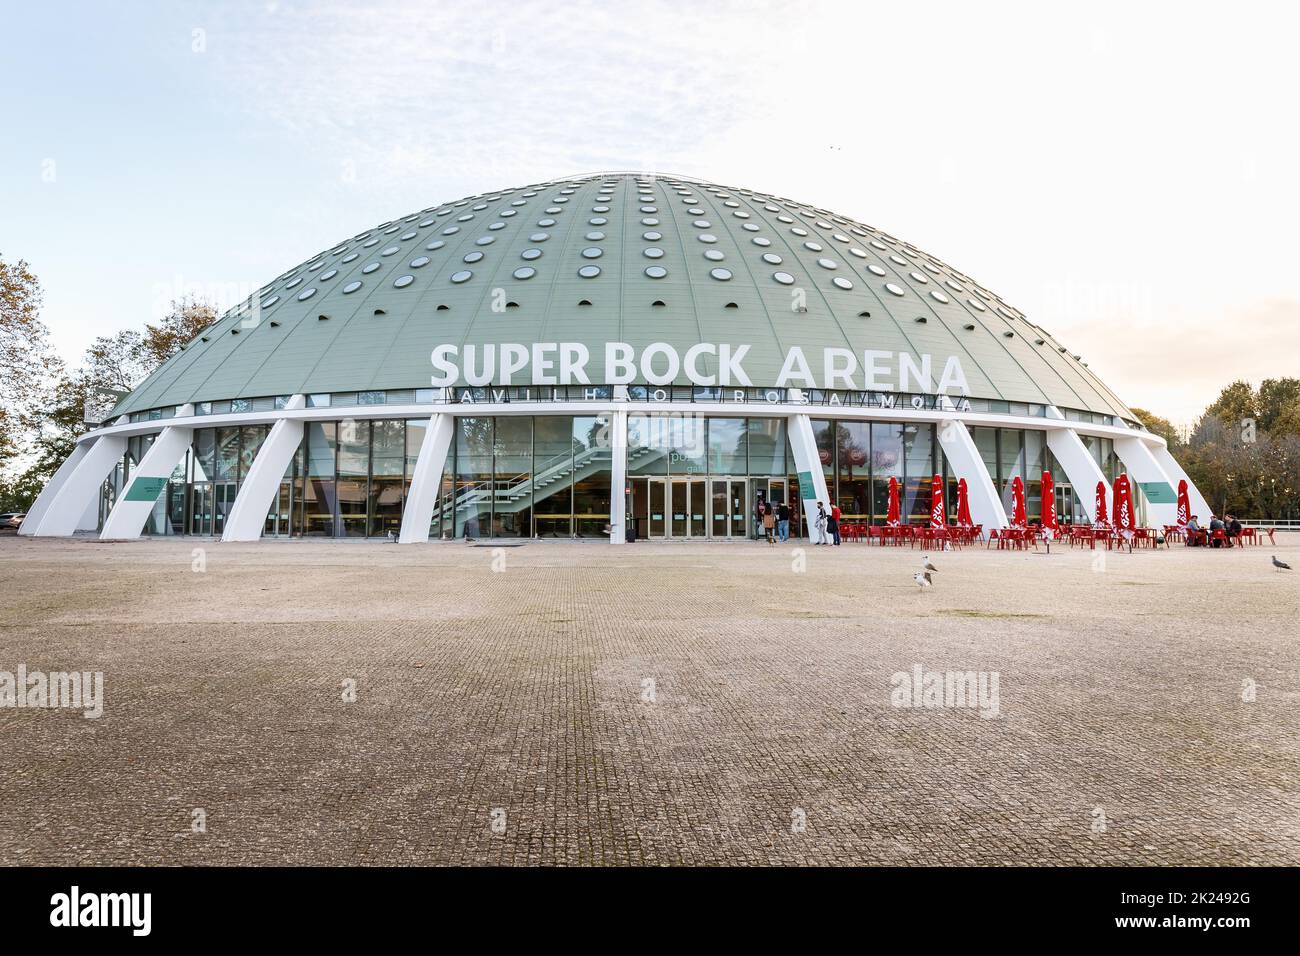 SPC – Super Bock Arena Porto